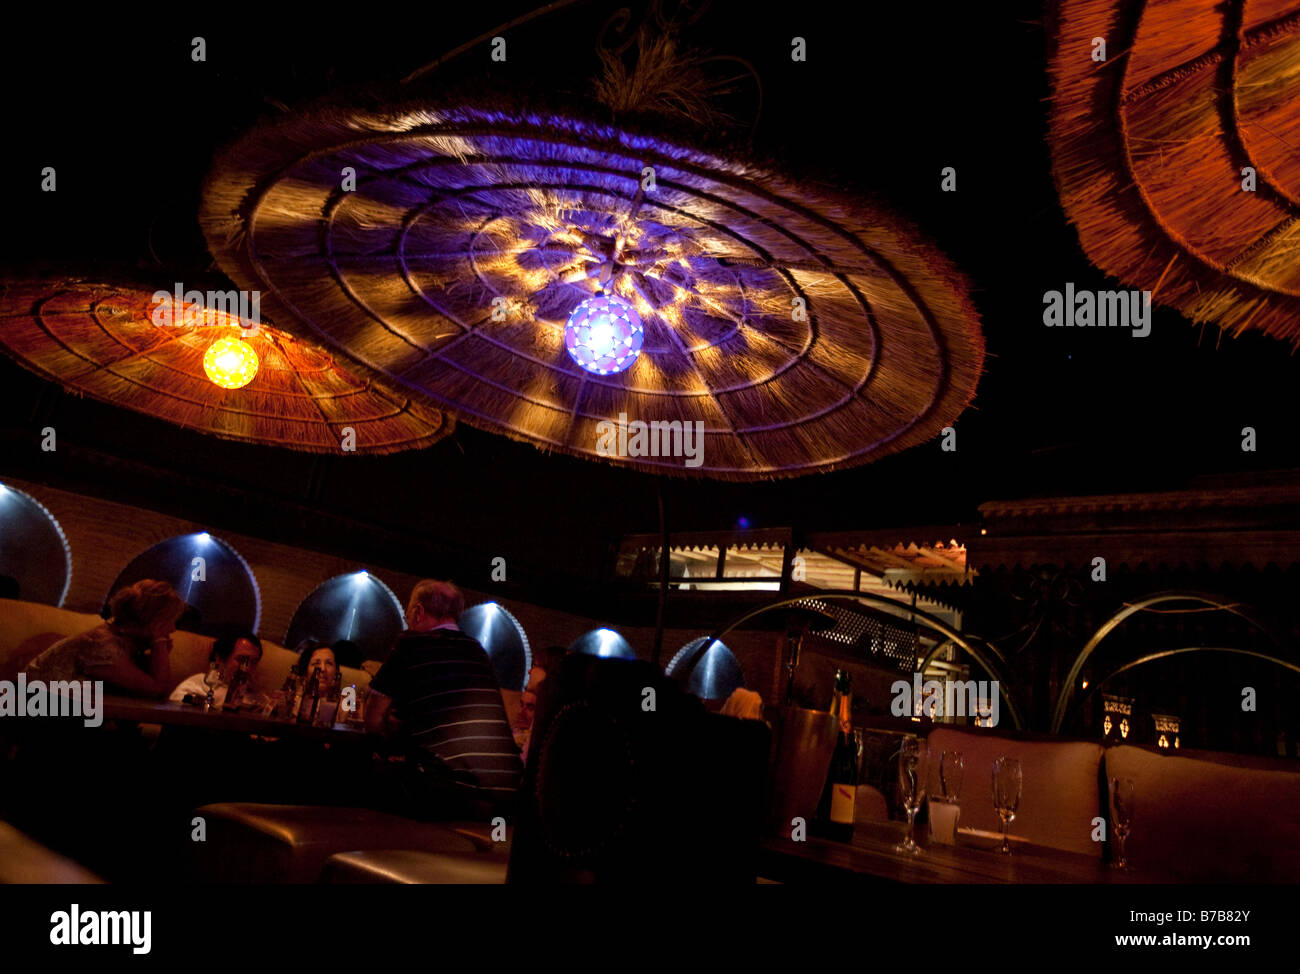 Bunte Lampen beleuchten die Dachterrasse der Kozi Bar in Marrakesch Marokko. Stockfoto